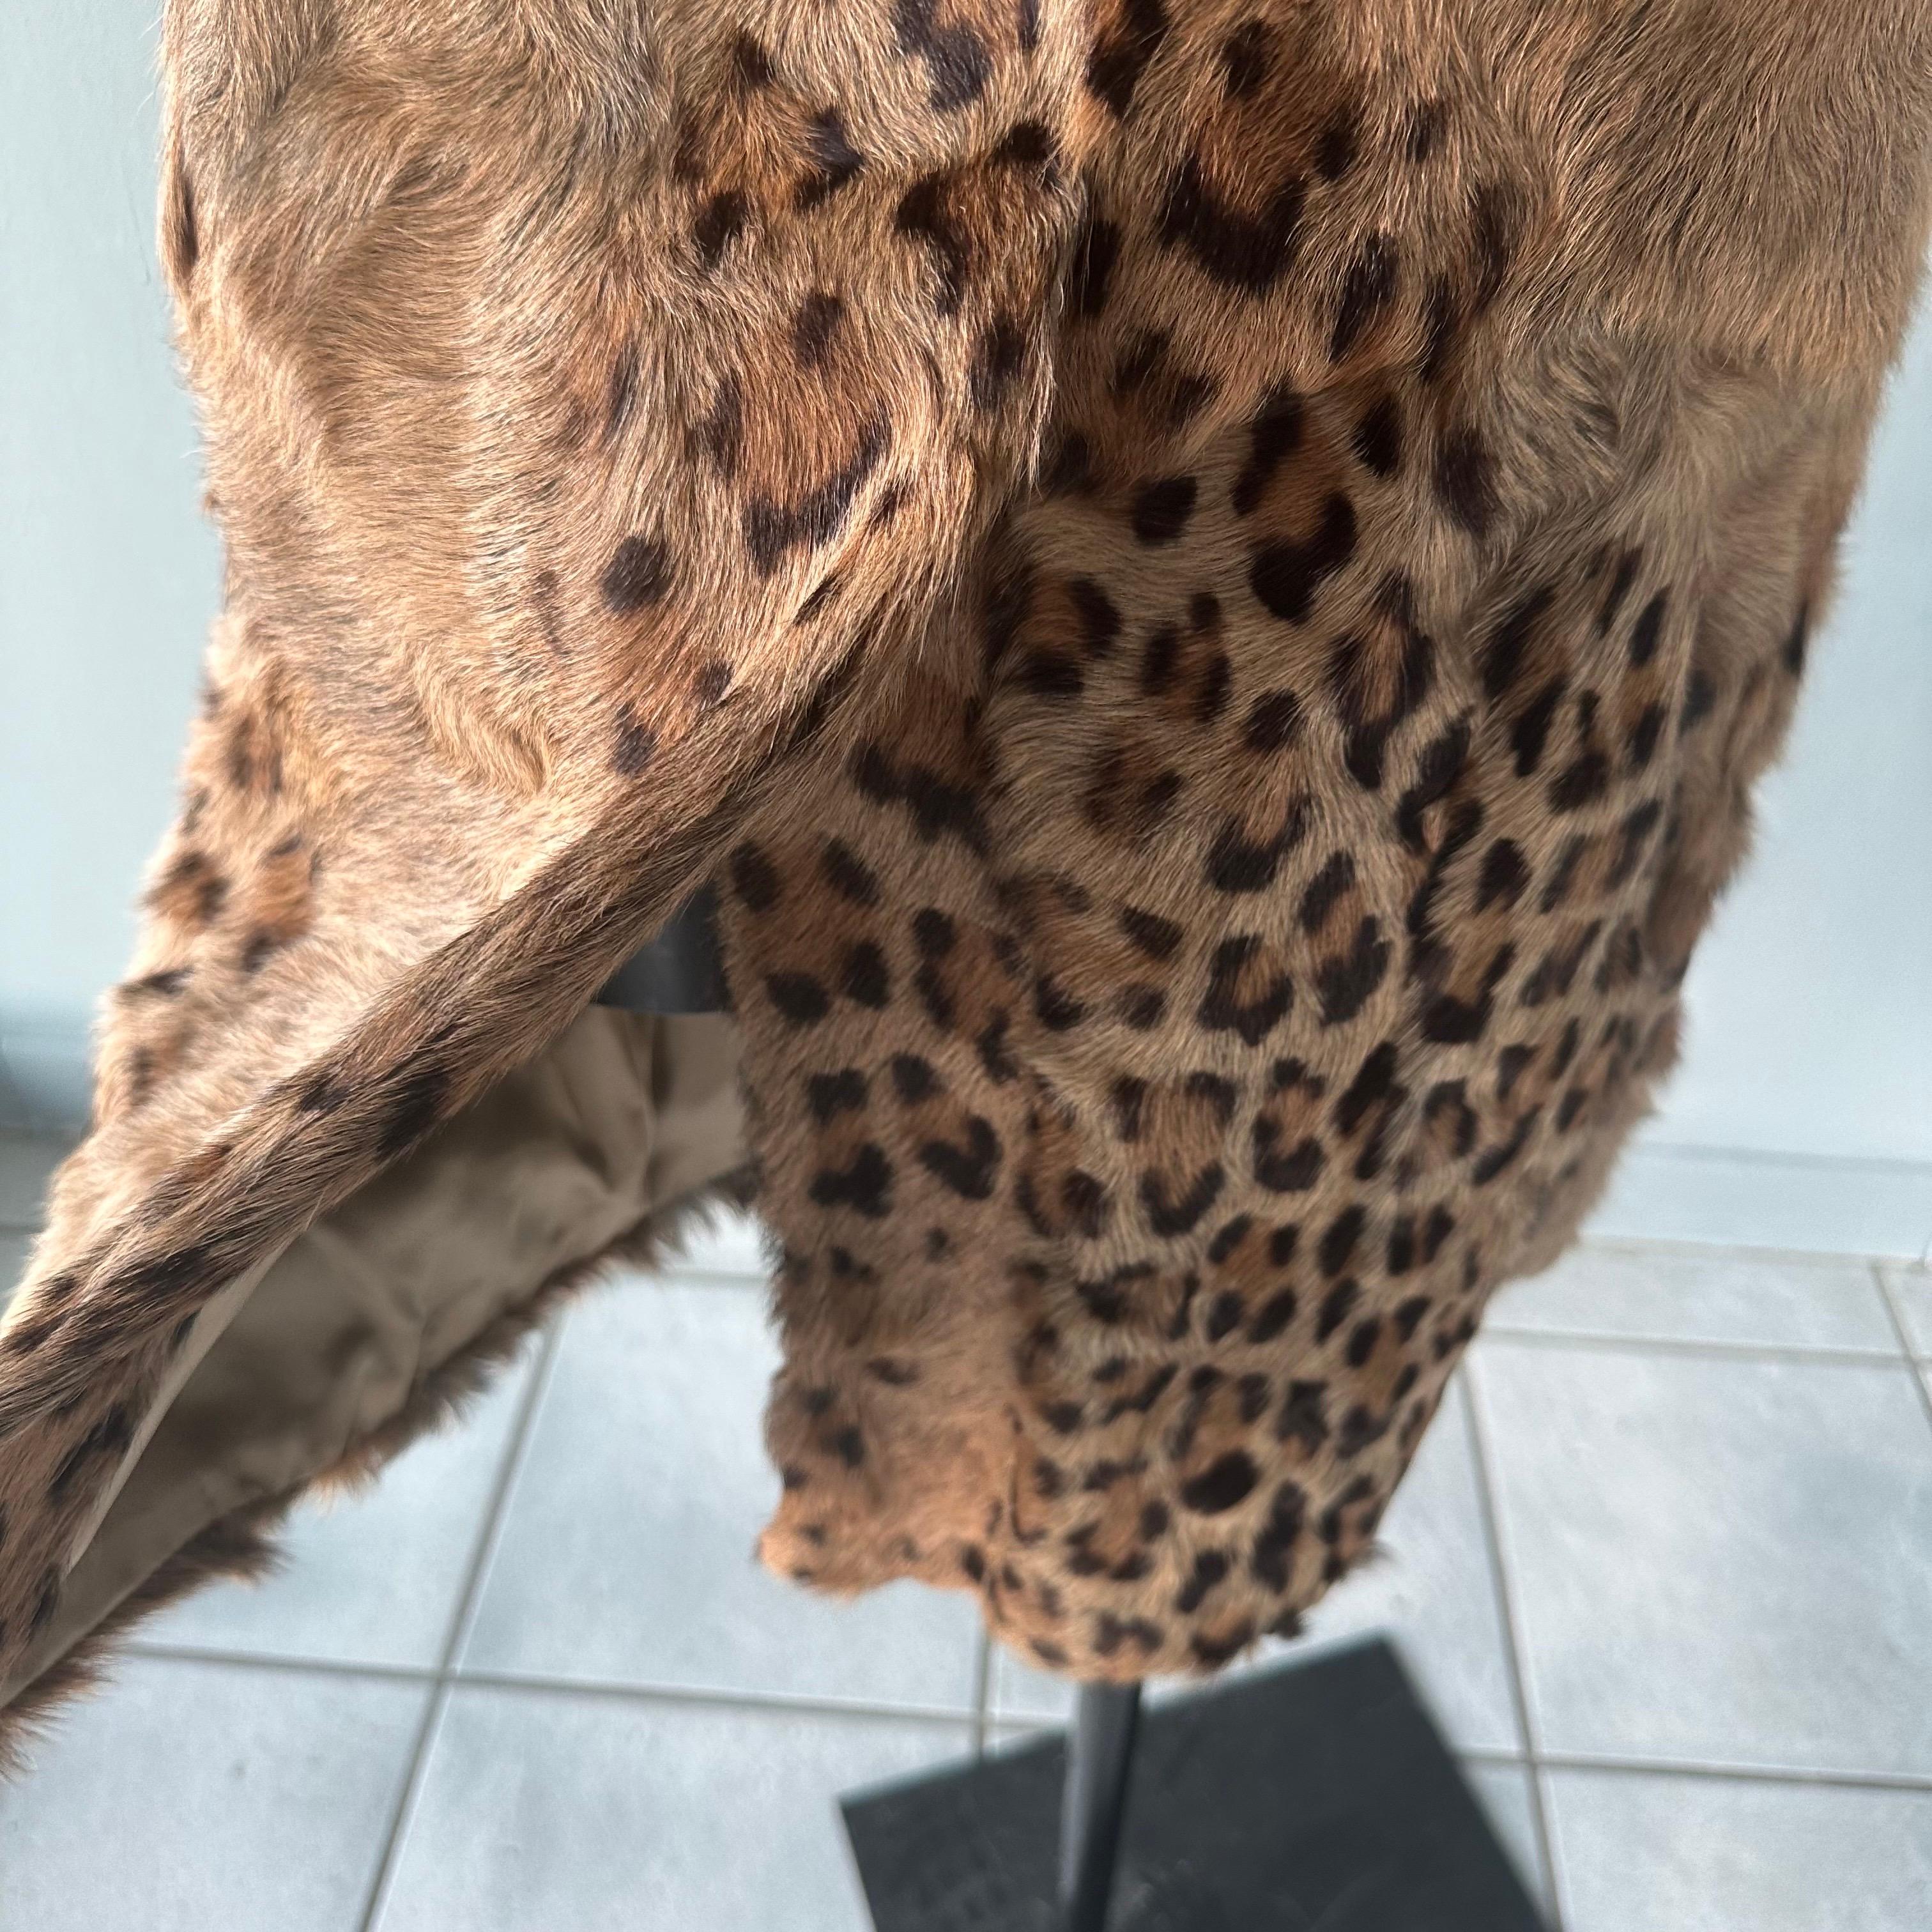 Gilet Prada  in pelliccia di capretto con stampa animalier In Excellent Condition For Sale In Basaluzzo, IT